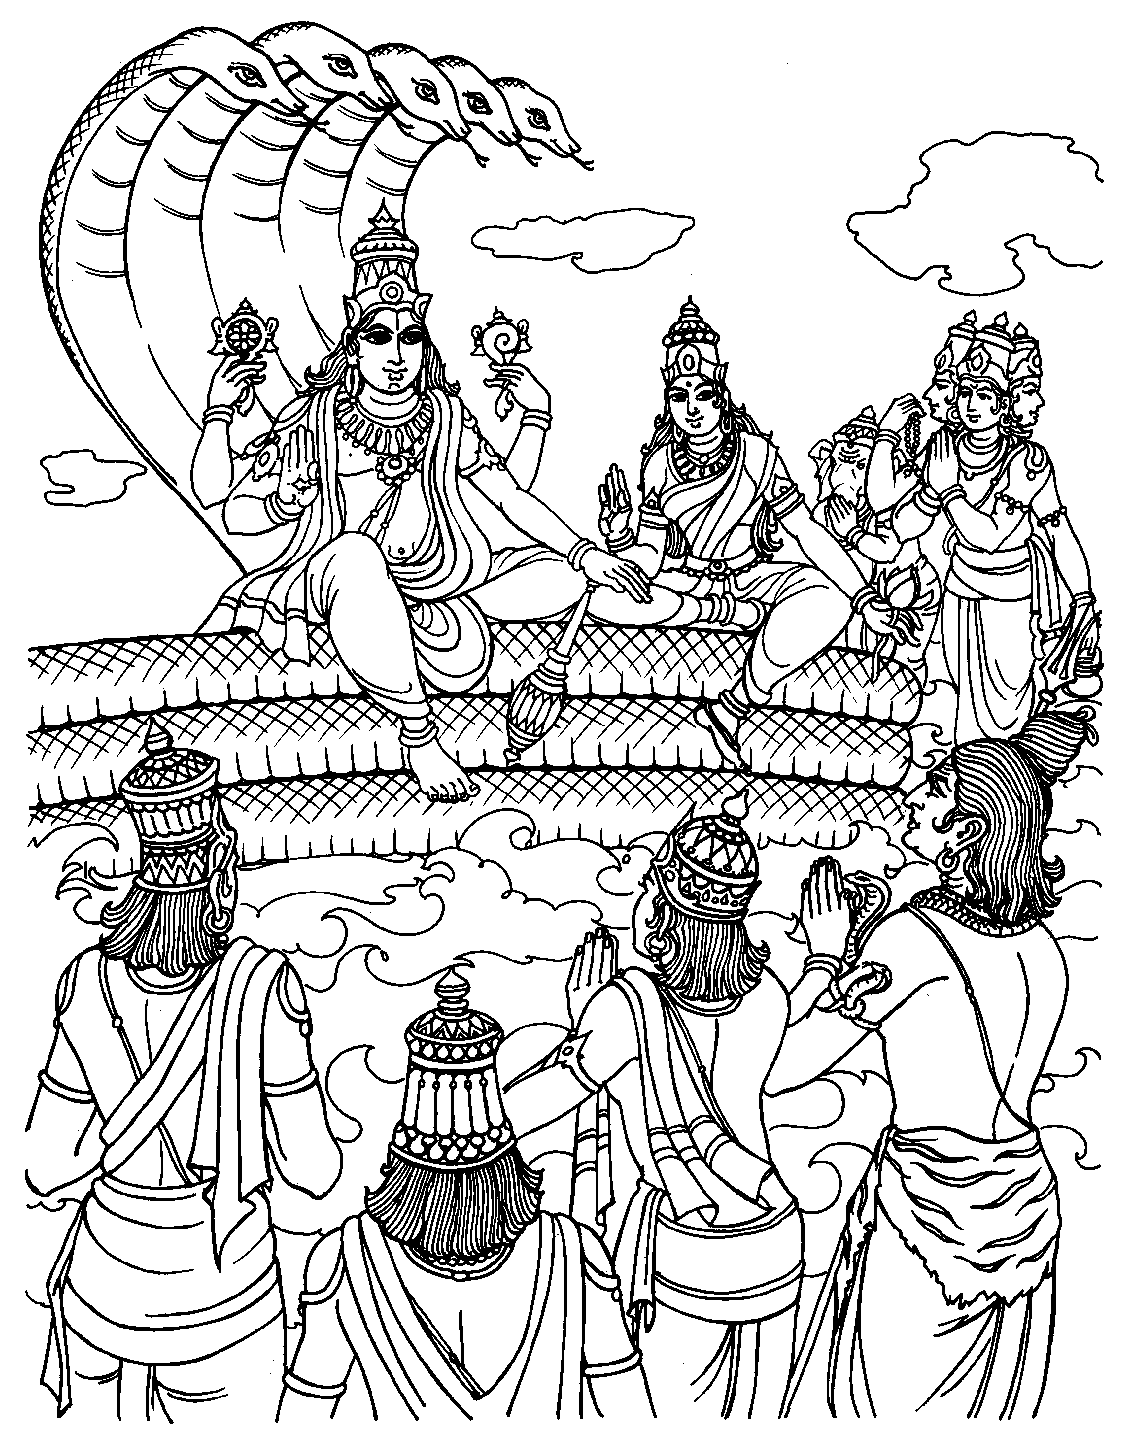 Coloring page of Vishnu who takes human form : Rama, to visit men